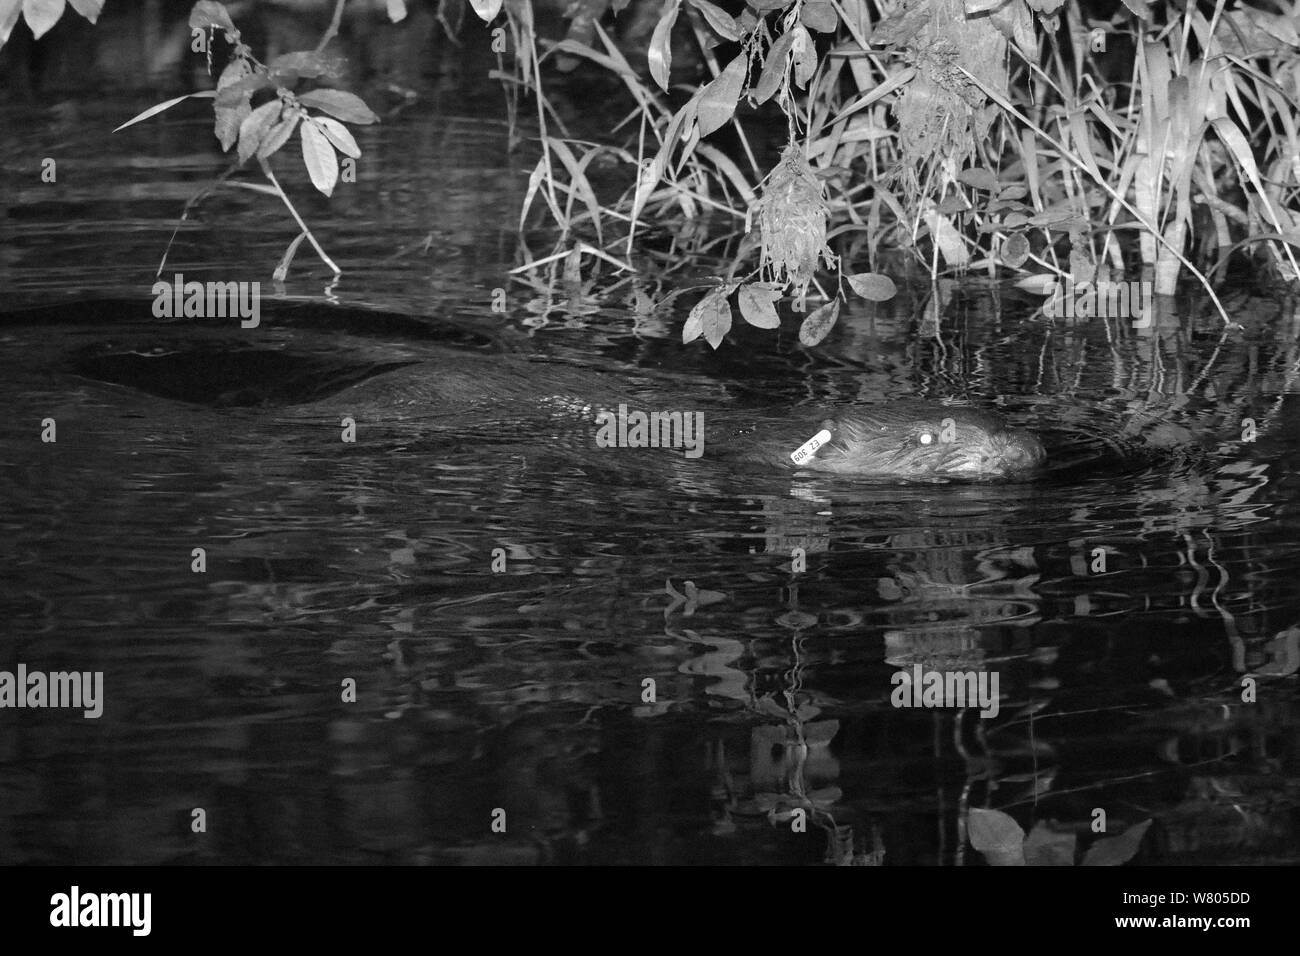 El castor (Castor fiber Eurasia) hembra adulta con la marca auricular, nadando en la nutria de río en la noche, cerca de donde fue liberado por el Devon Wildlife Trust, Devon, Reino Unido, agosto de 2015. Photoraphed por infrarrojos. Foto de stock